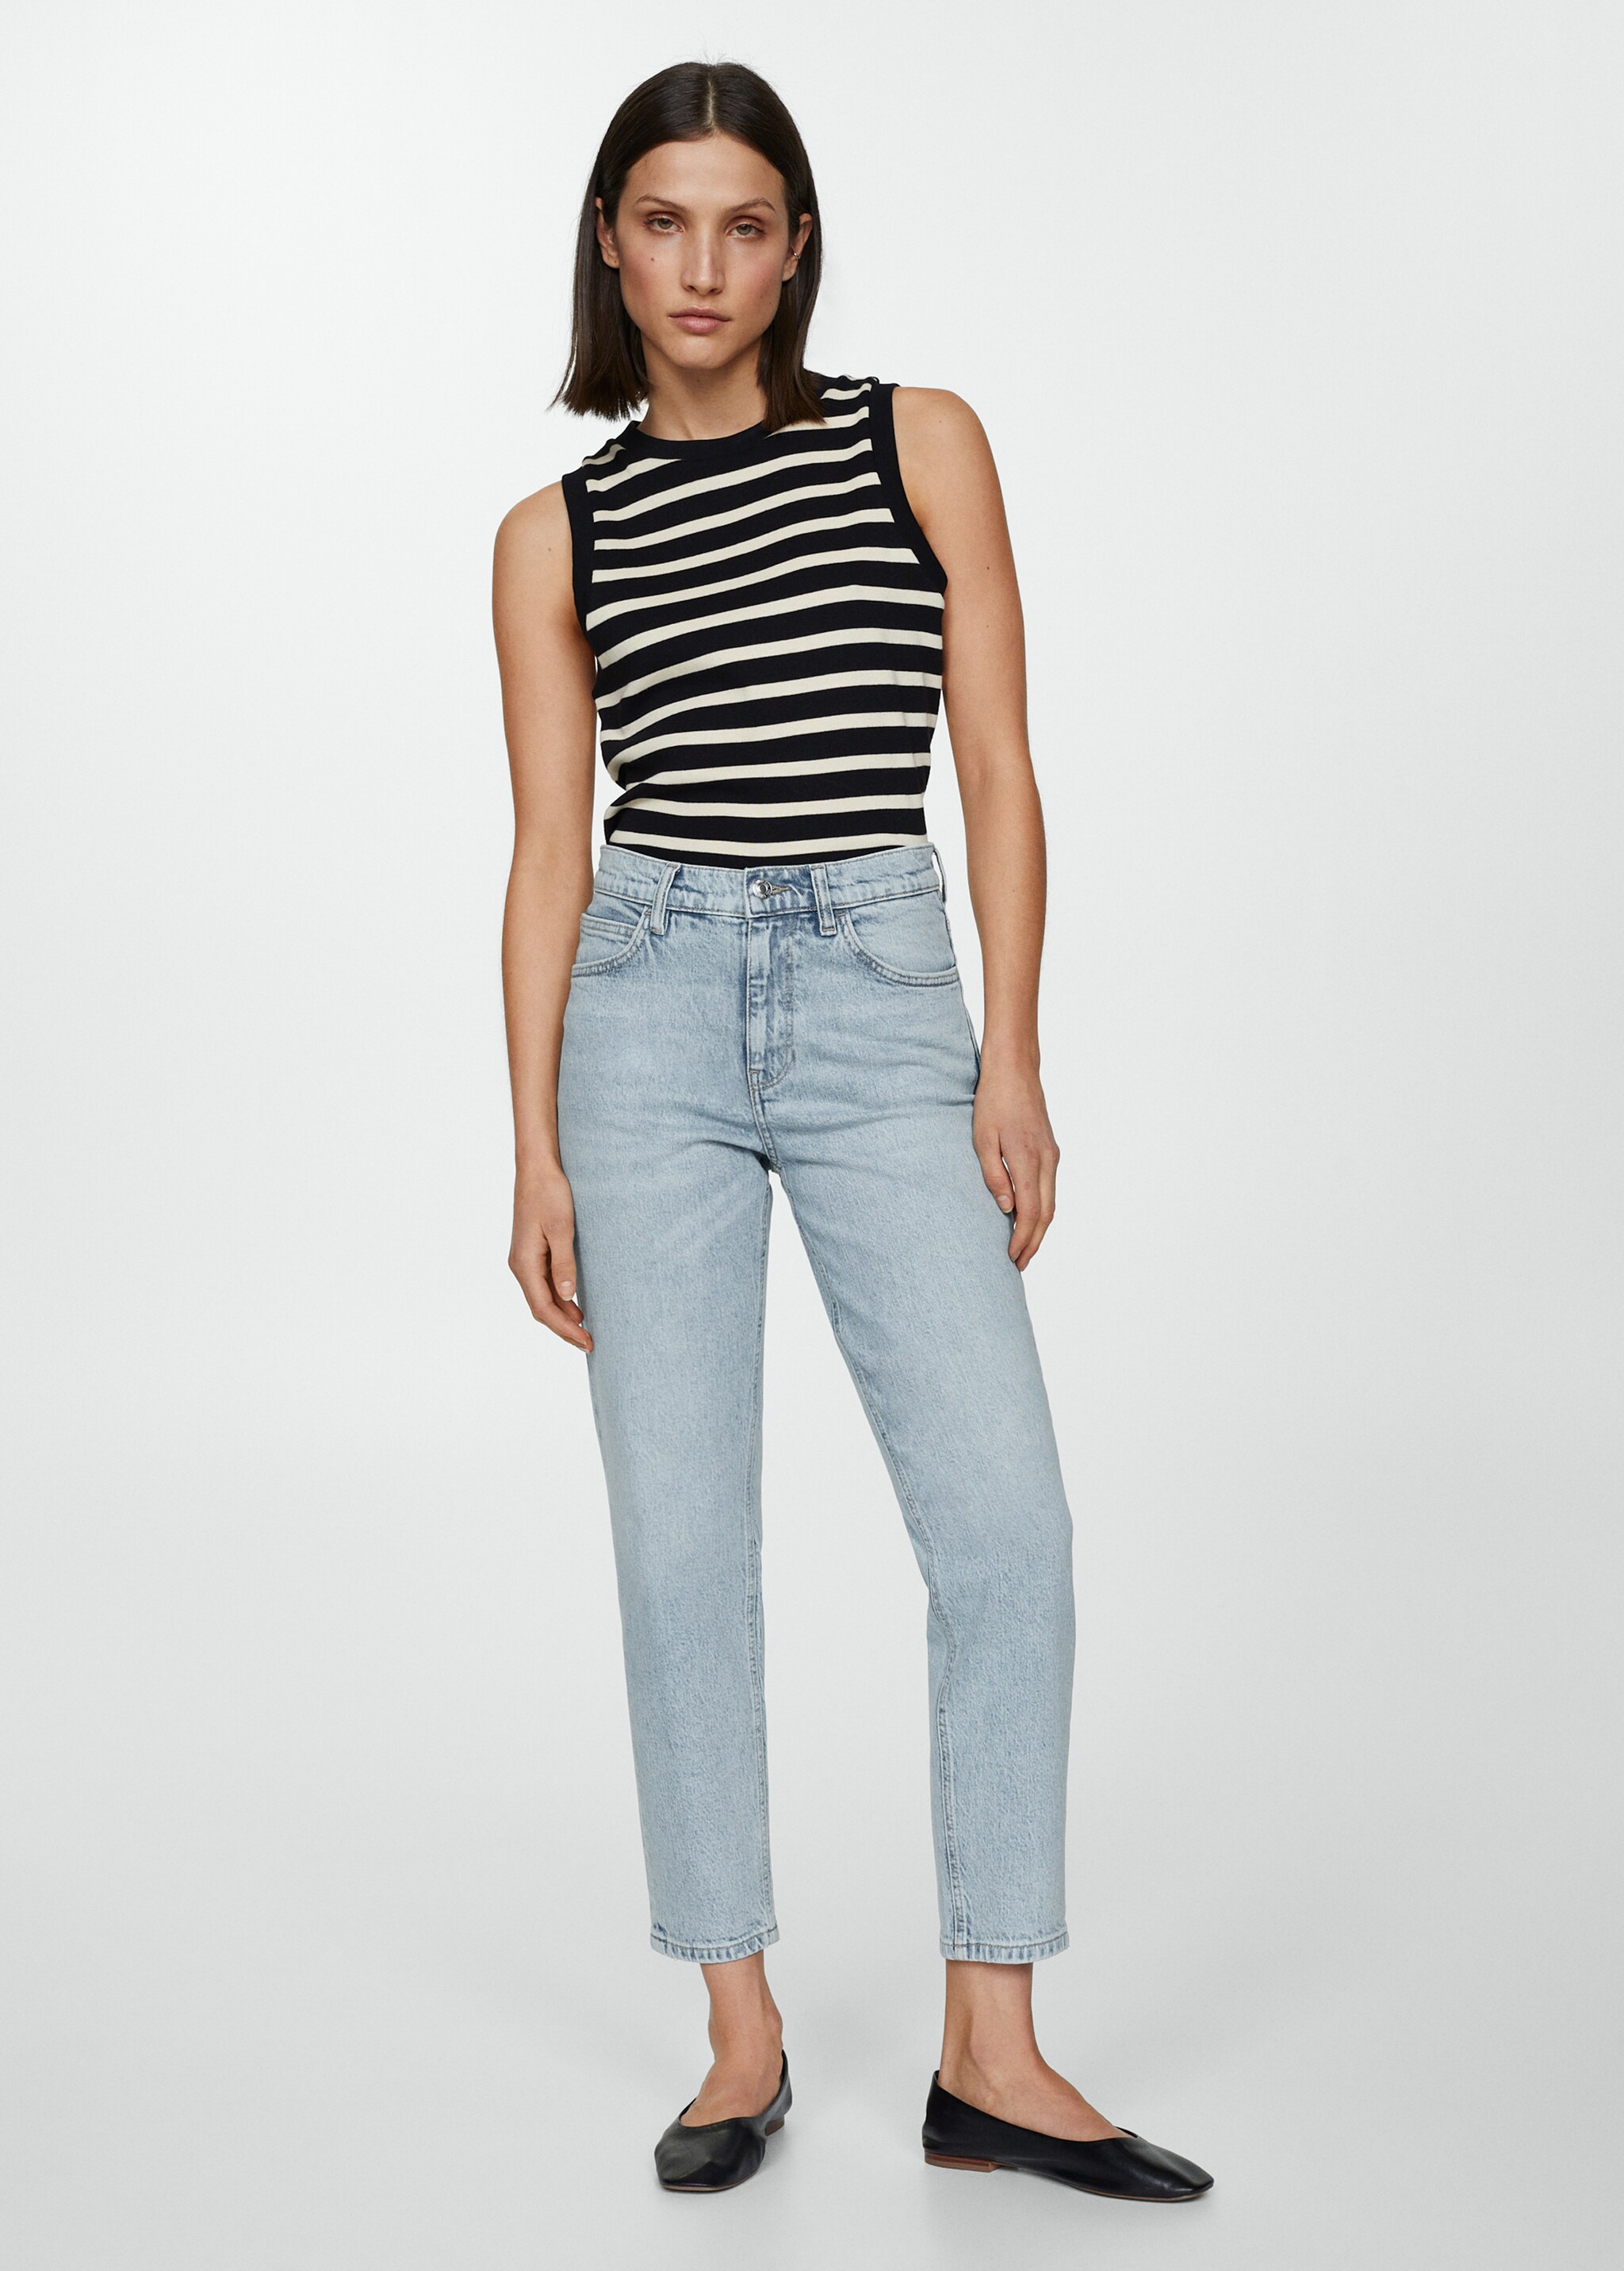 Комфортные джинсы Newmom с высокой талией - Общий план